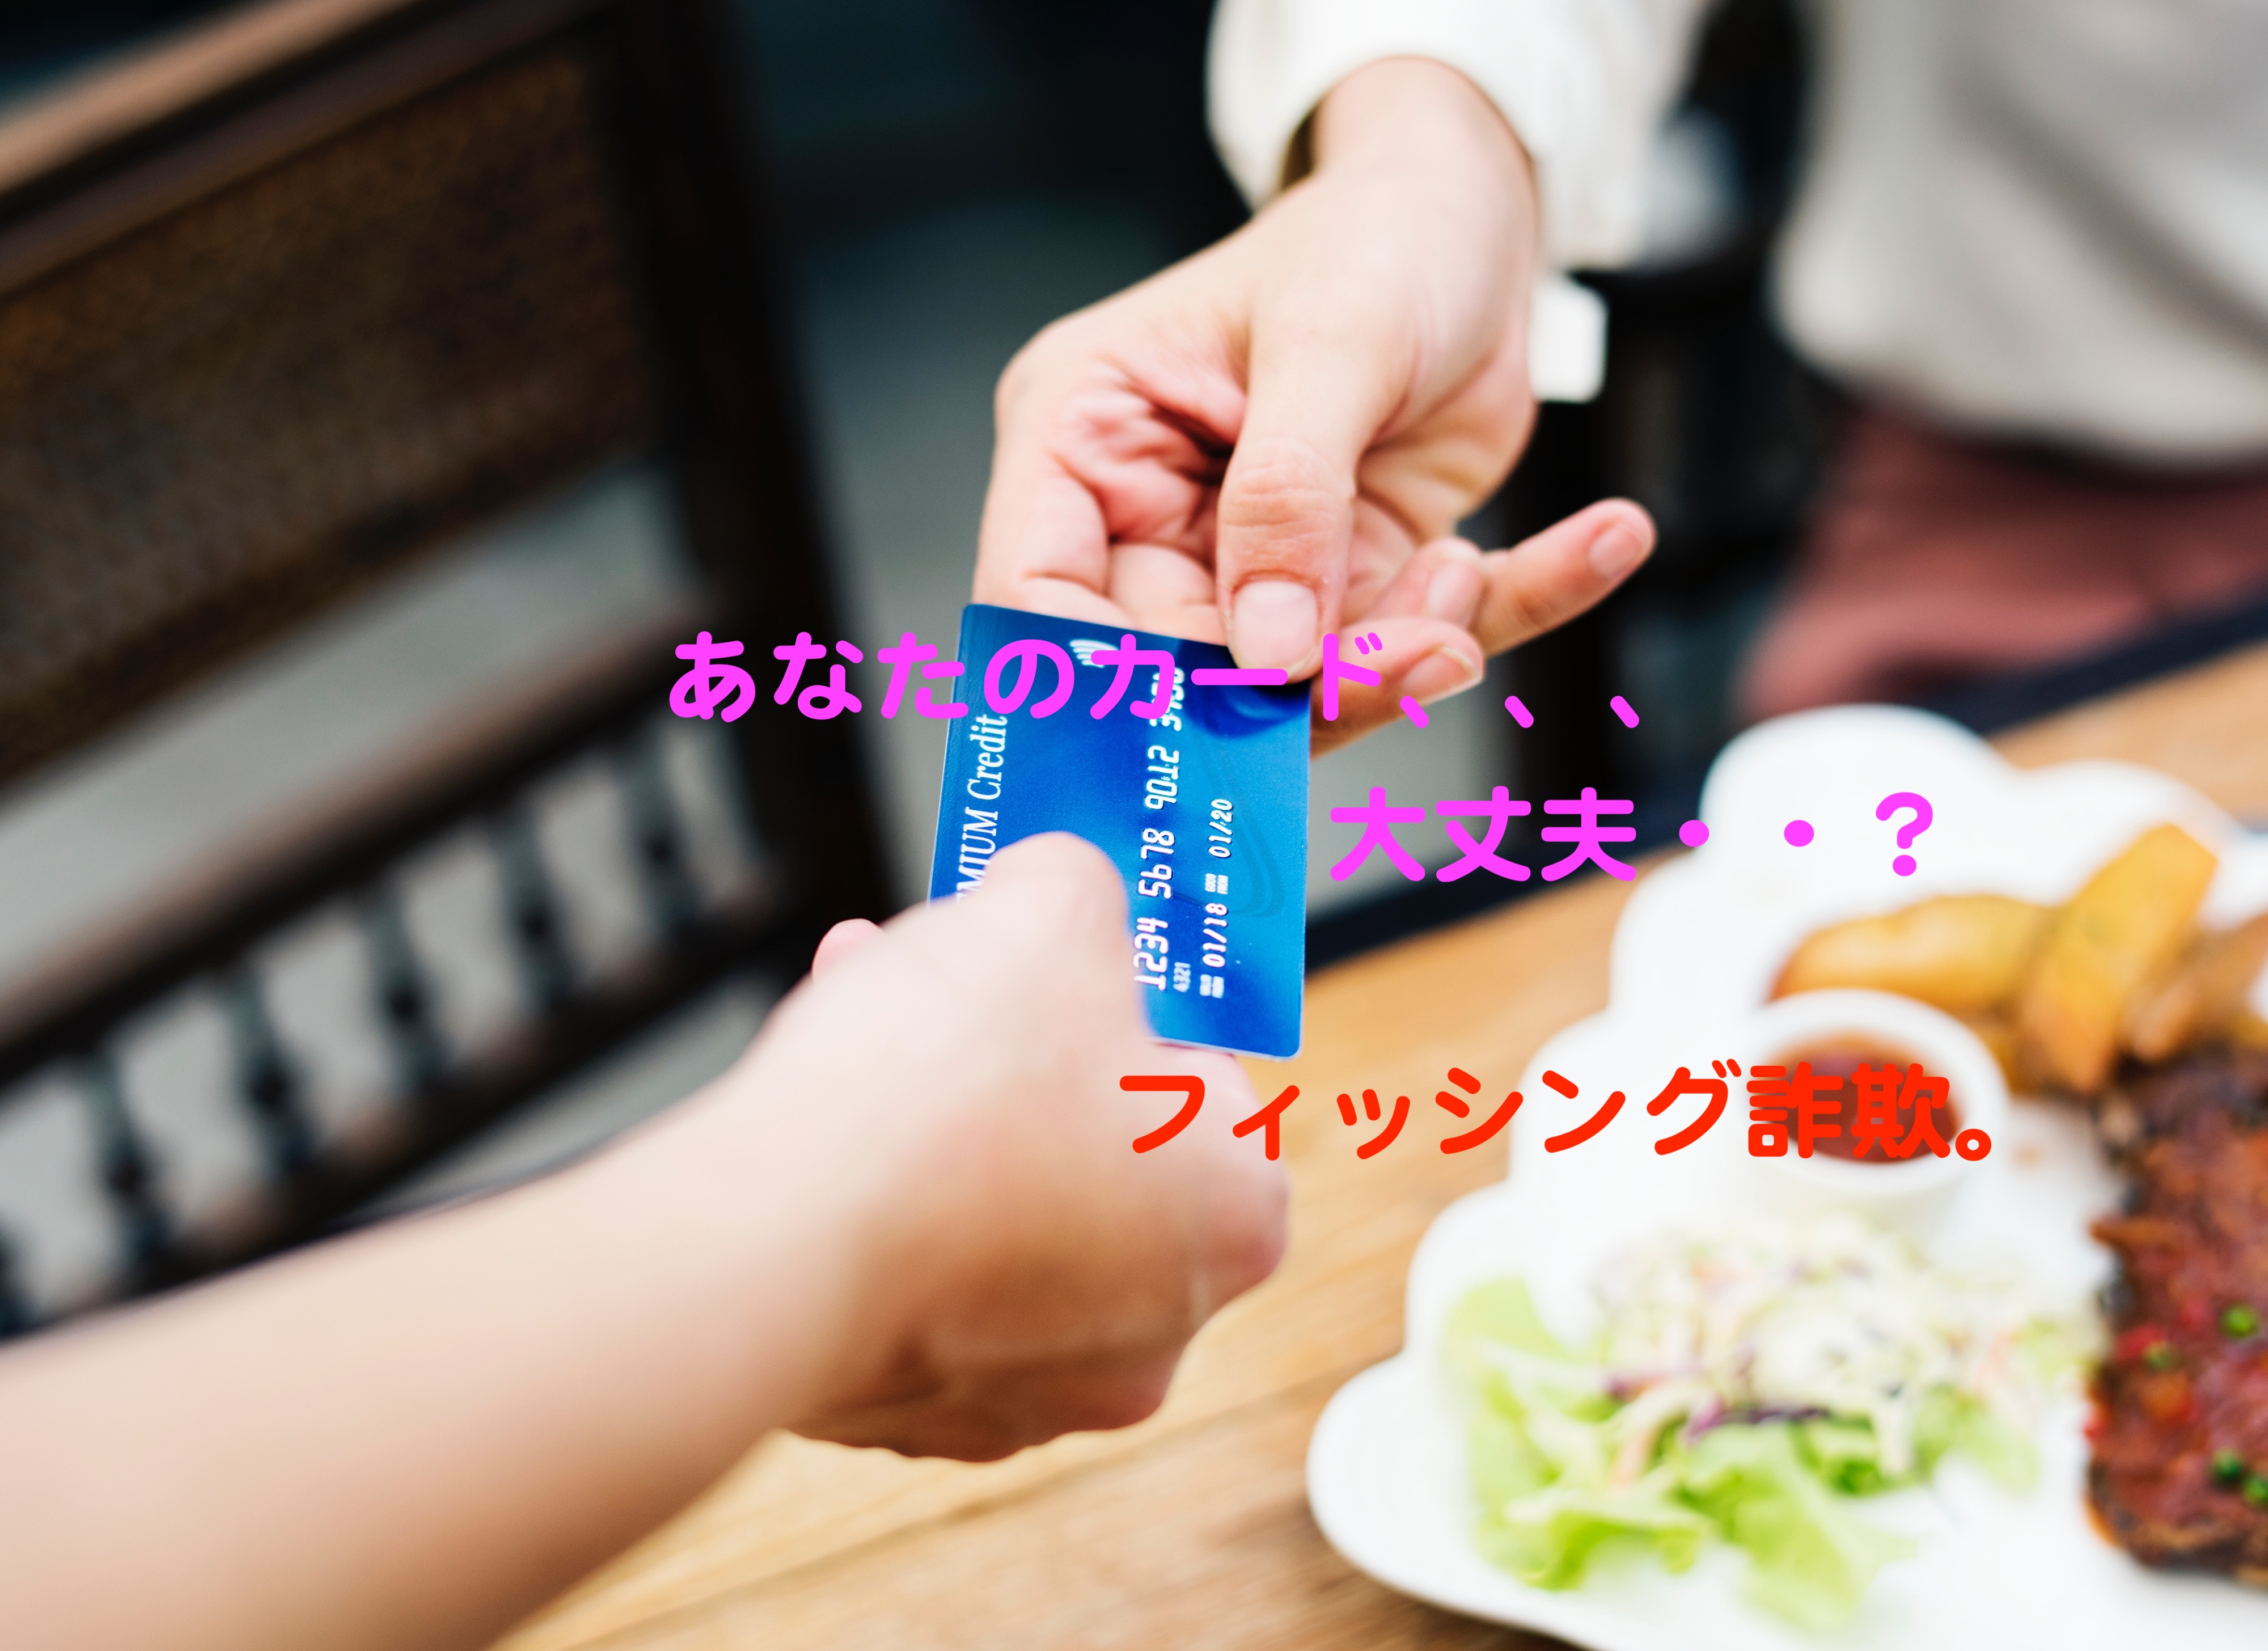 海外でクレジットカードが不正利用された時の対処法 The Himajin Words